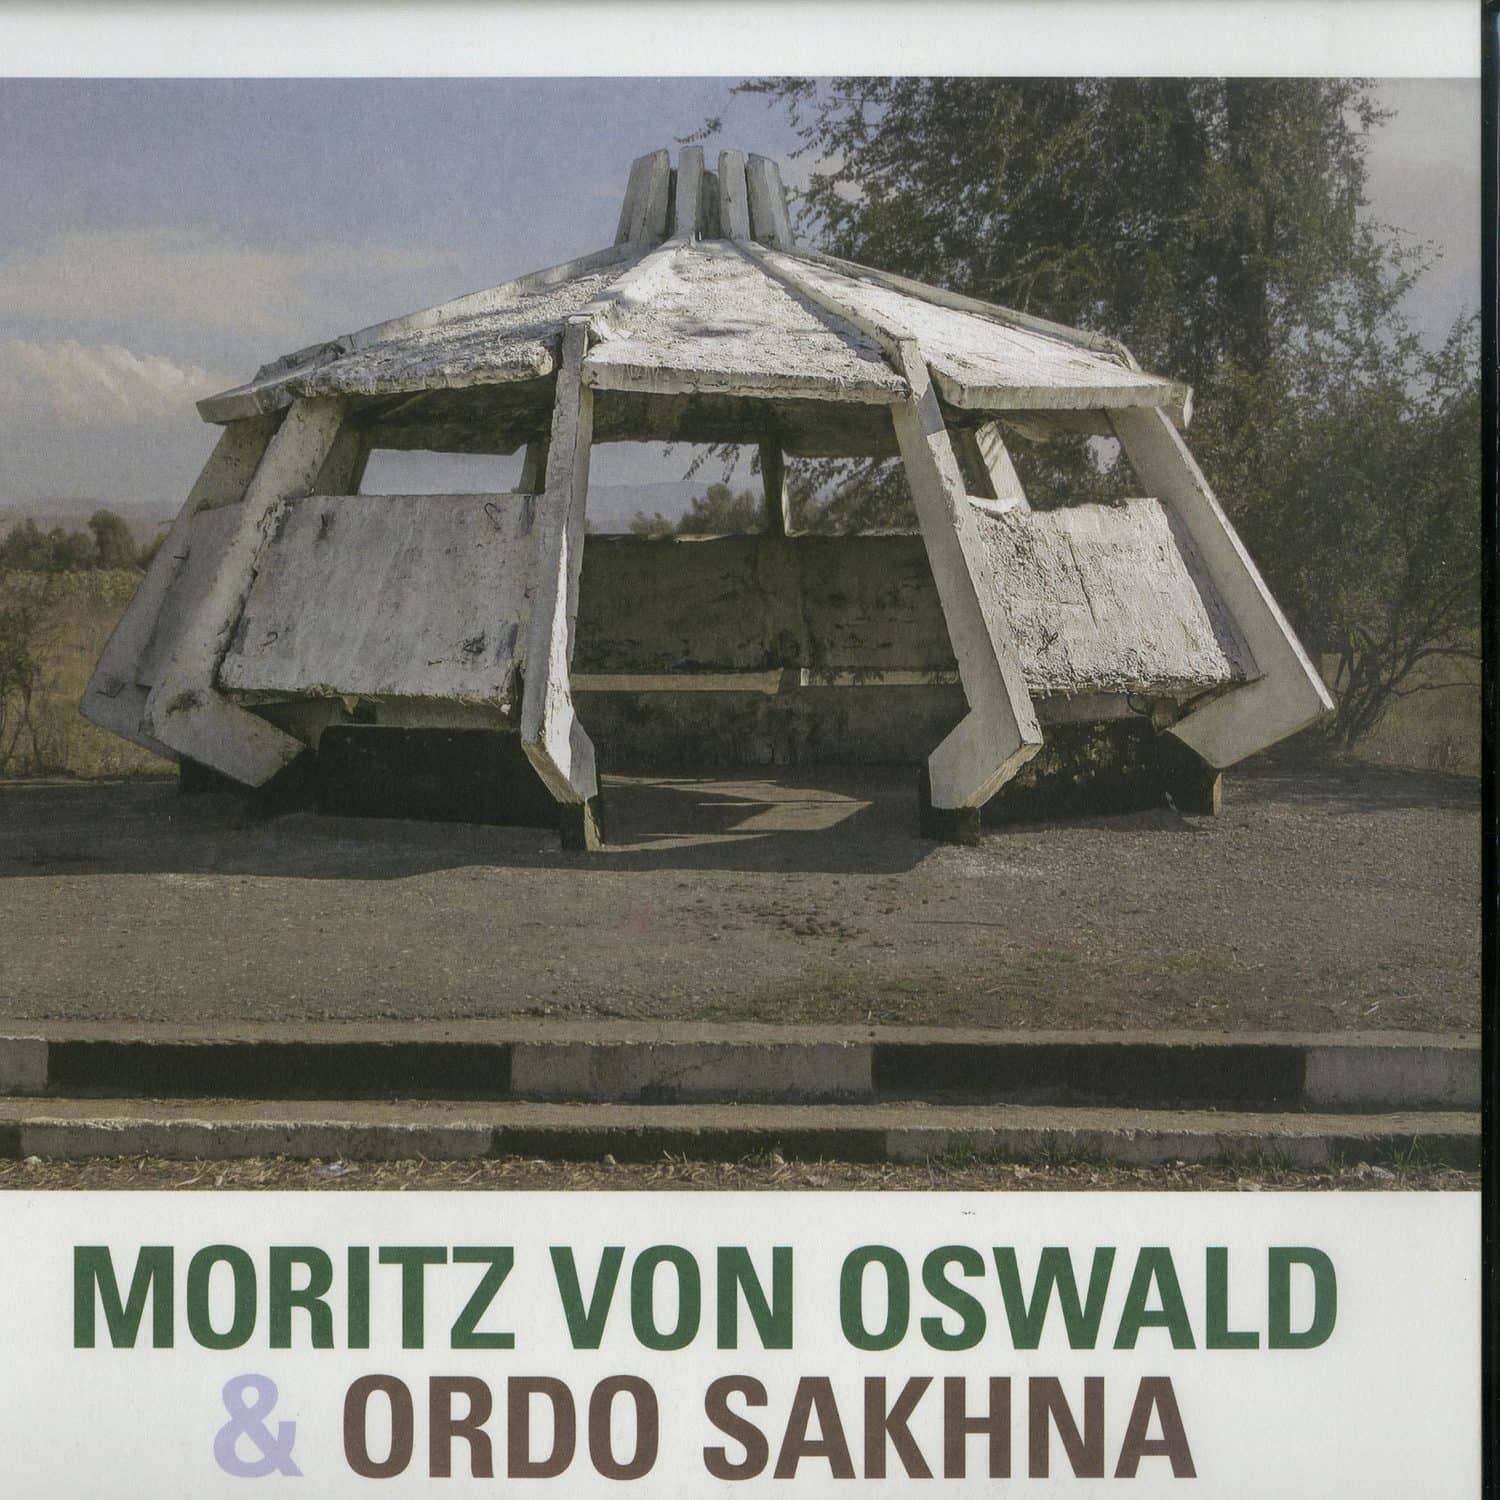 Moritz Von Oswald & Ordo Sakhna - MORITZ VON OSWALD & ORDO SAKHNA 